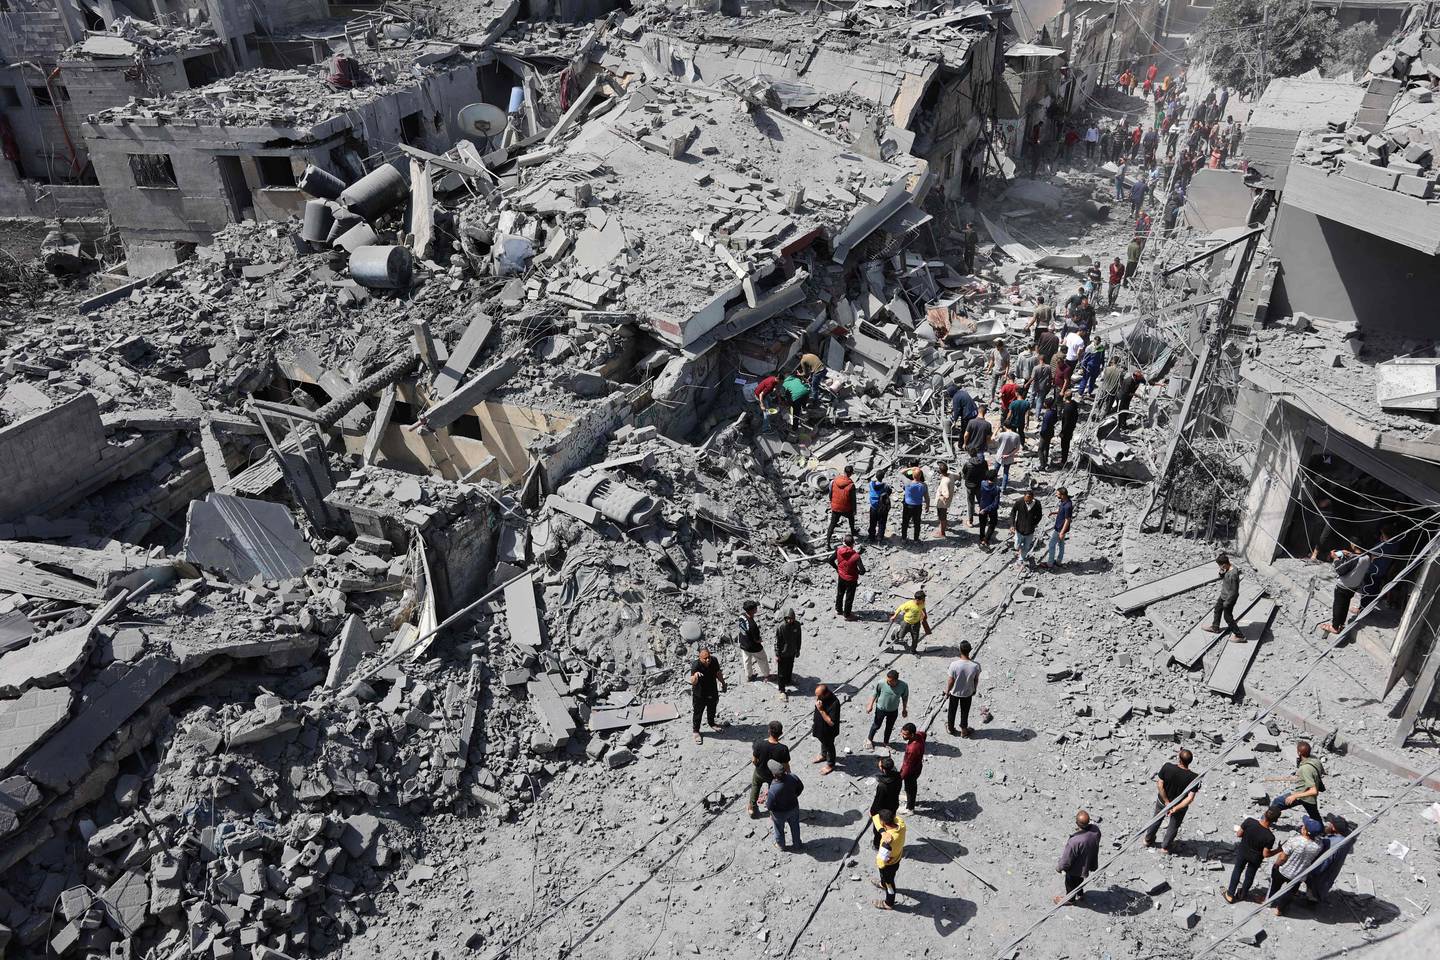 Los palestinos inspeccionan los escombros después del bombardeo israelí en el barrio de Al-Daraj en la ciudad de Gaza, en medio de batallas en curso entre Israel y el movimiento palestino Hamas. (Foto de AFP)